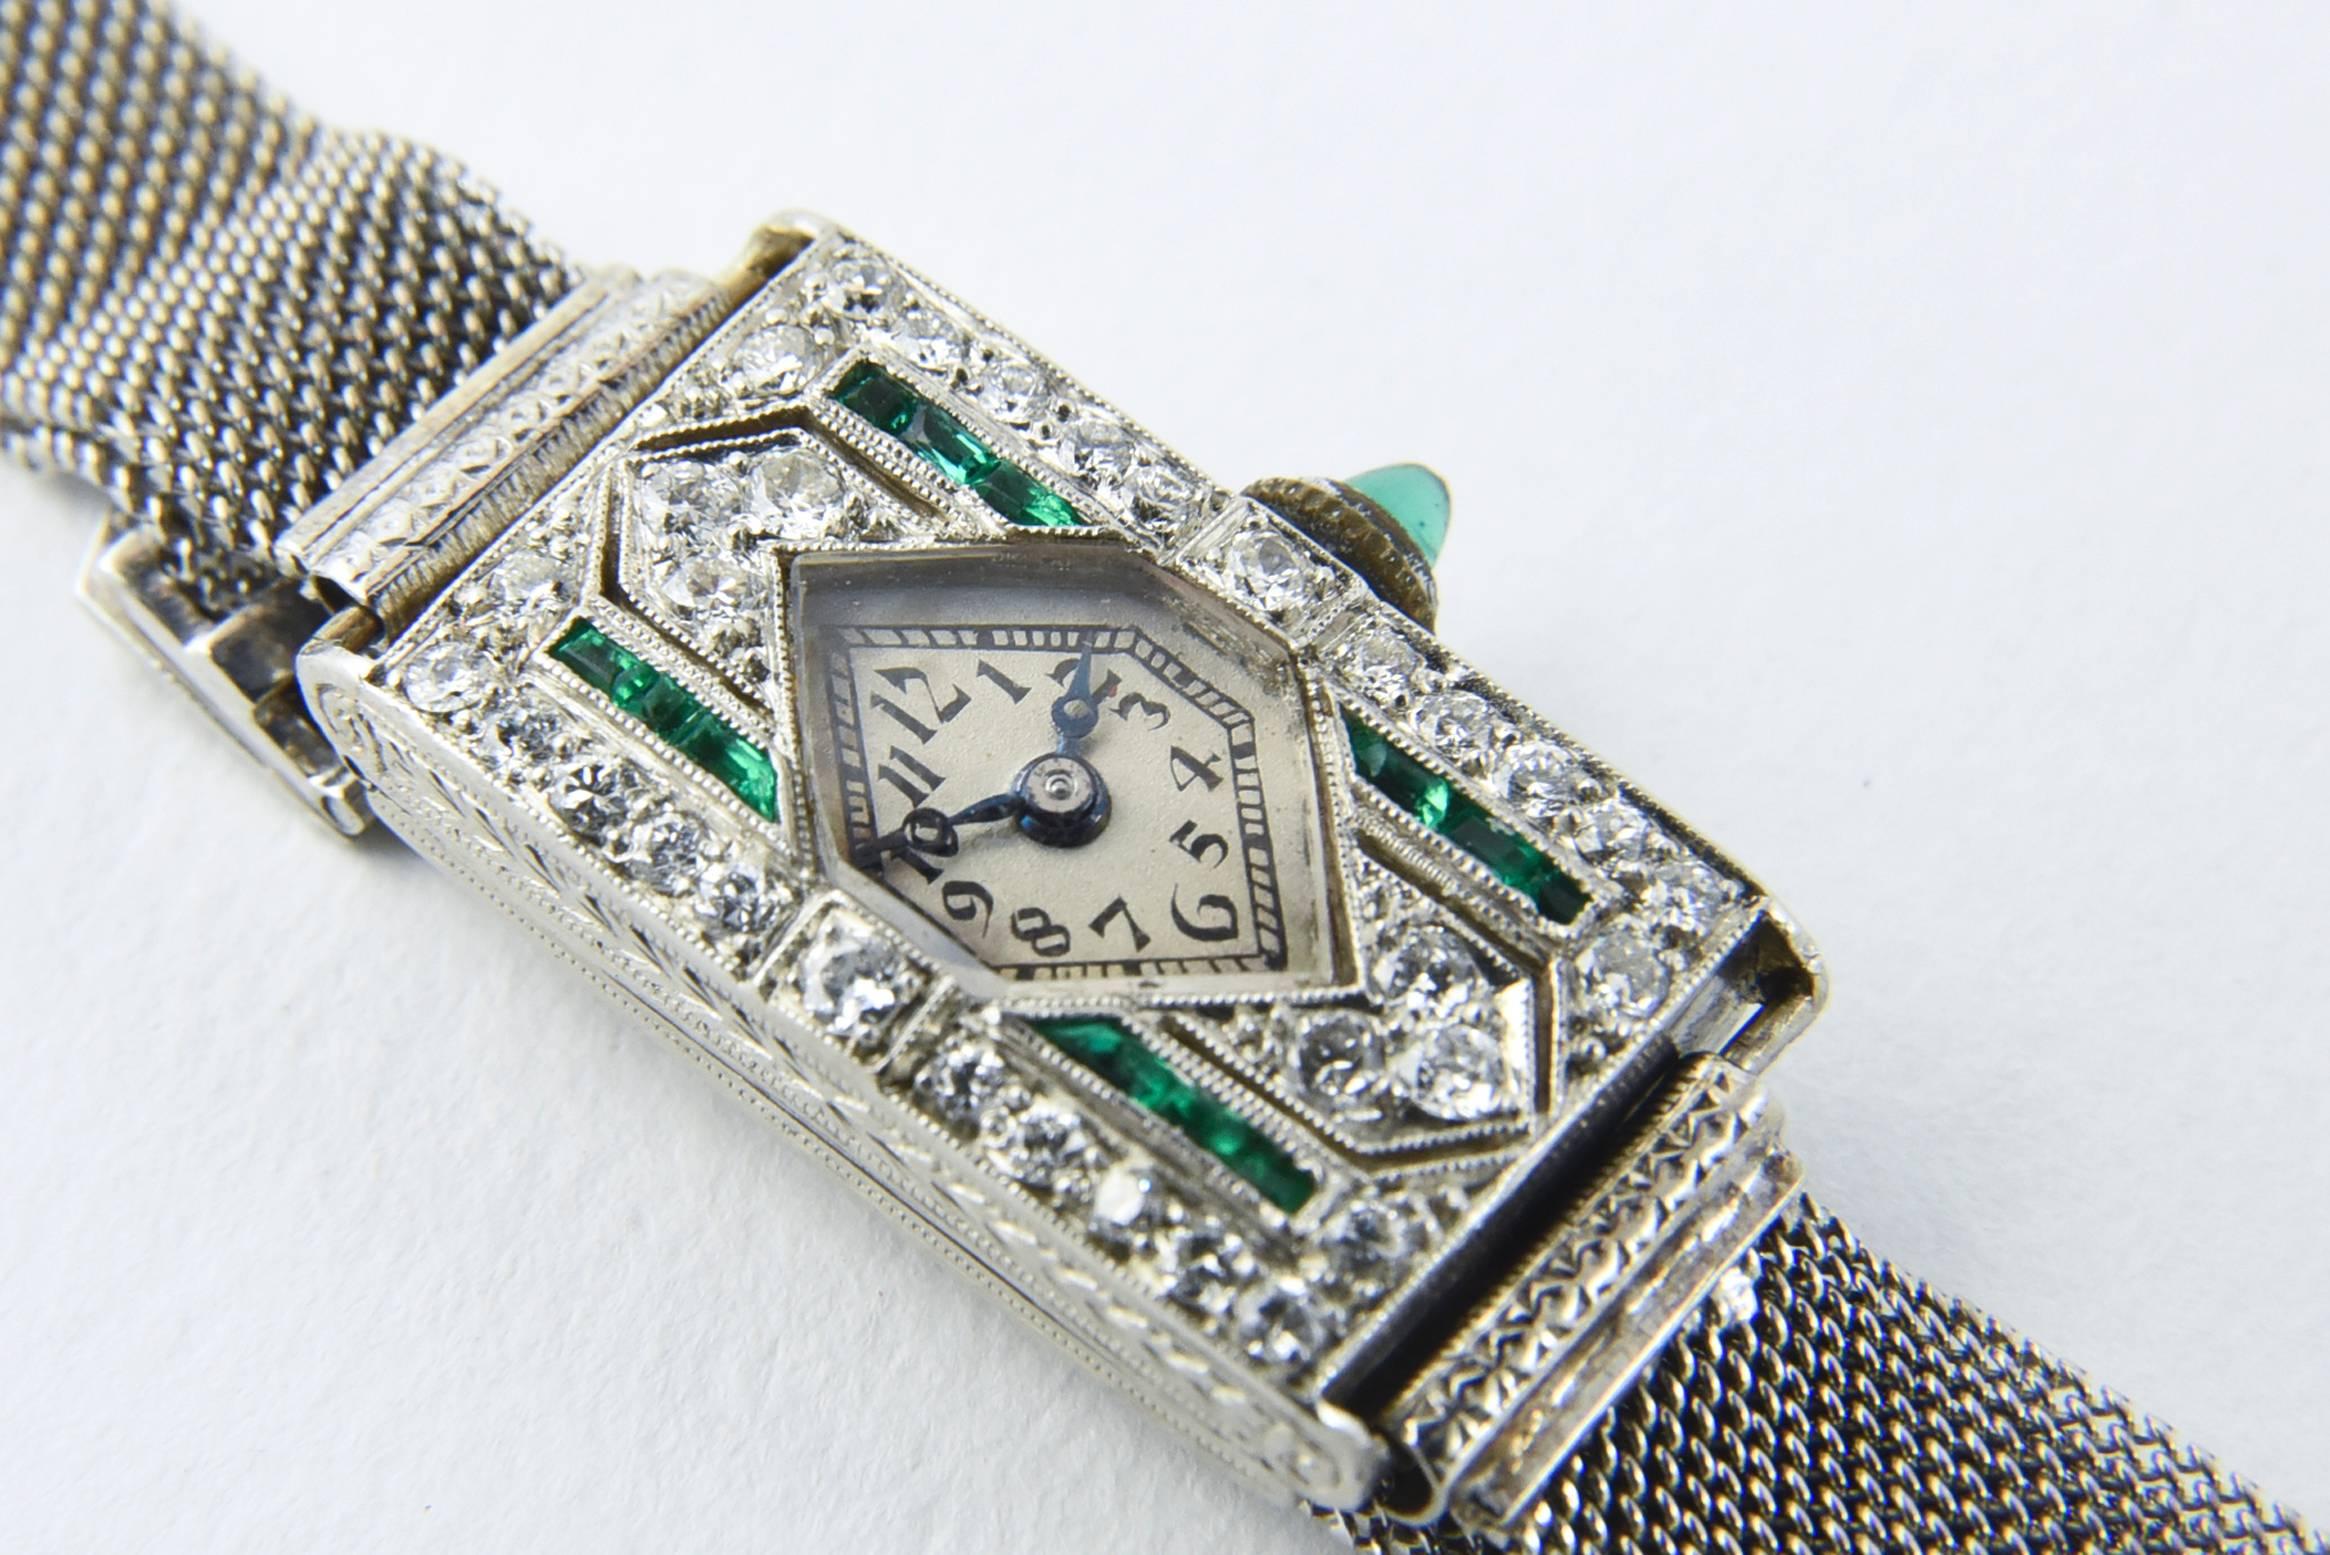 Antike Art Deco Glycine Uhr mit einem Platingehäuse mit diamantförmigem Zifferblatt und kanalgefassten Smaragden und zackengefassten Diamanten auf einem Platinarmband.  Glycine Schweizer Uhrwerk.

Die nachstehende Messung bezieht sich auf das